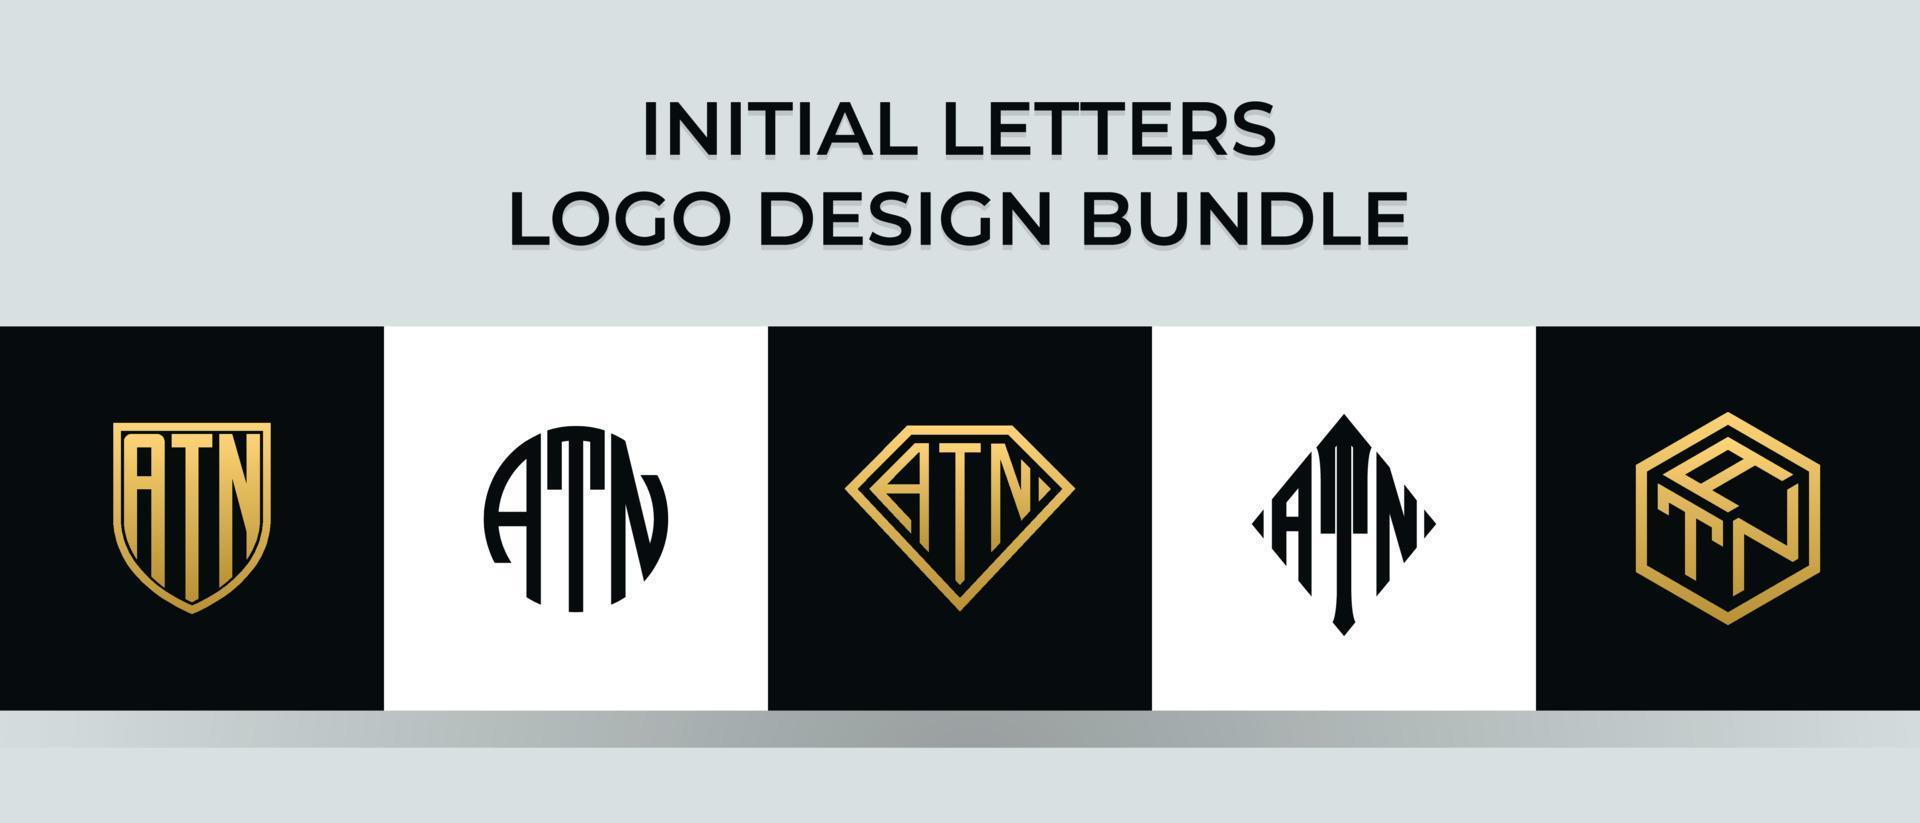 letras iniciales atn logo diseños paquete vector